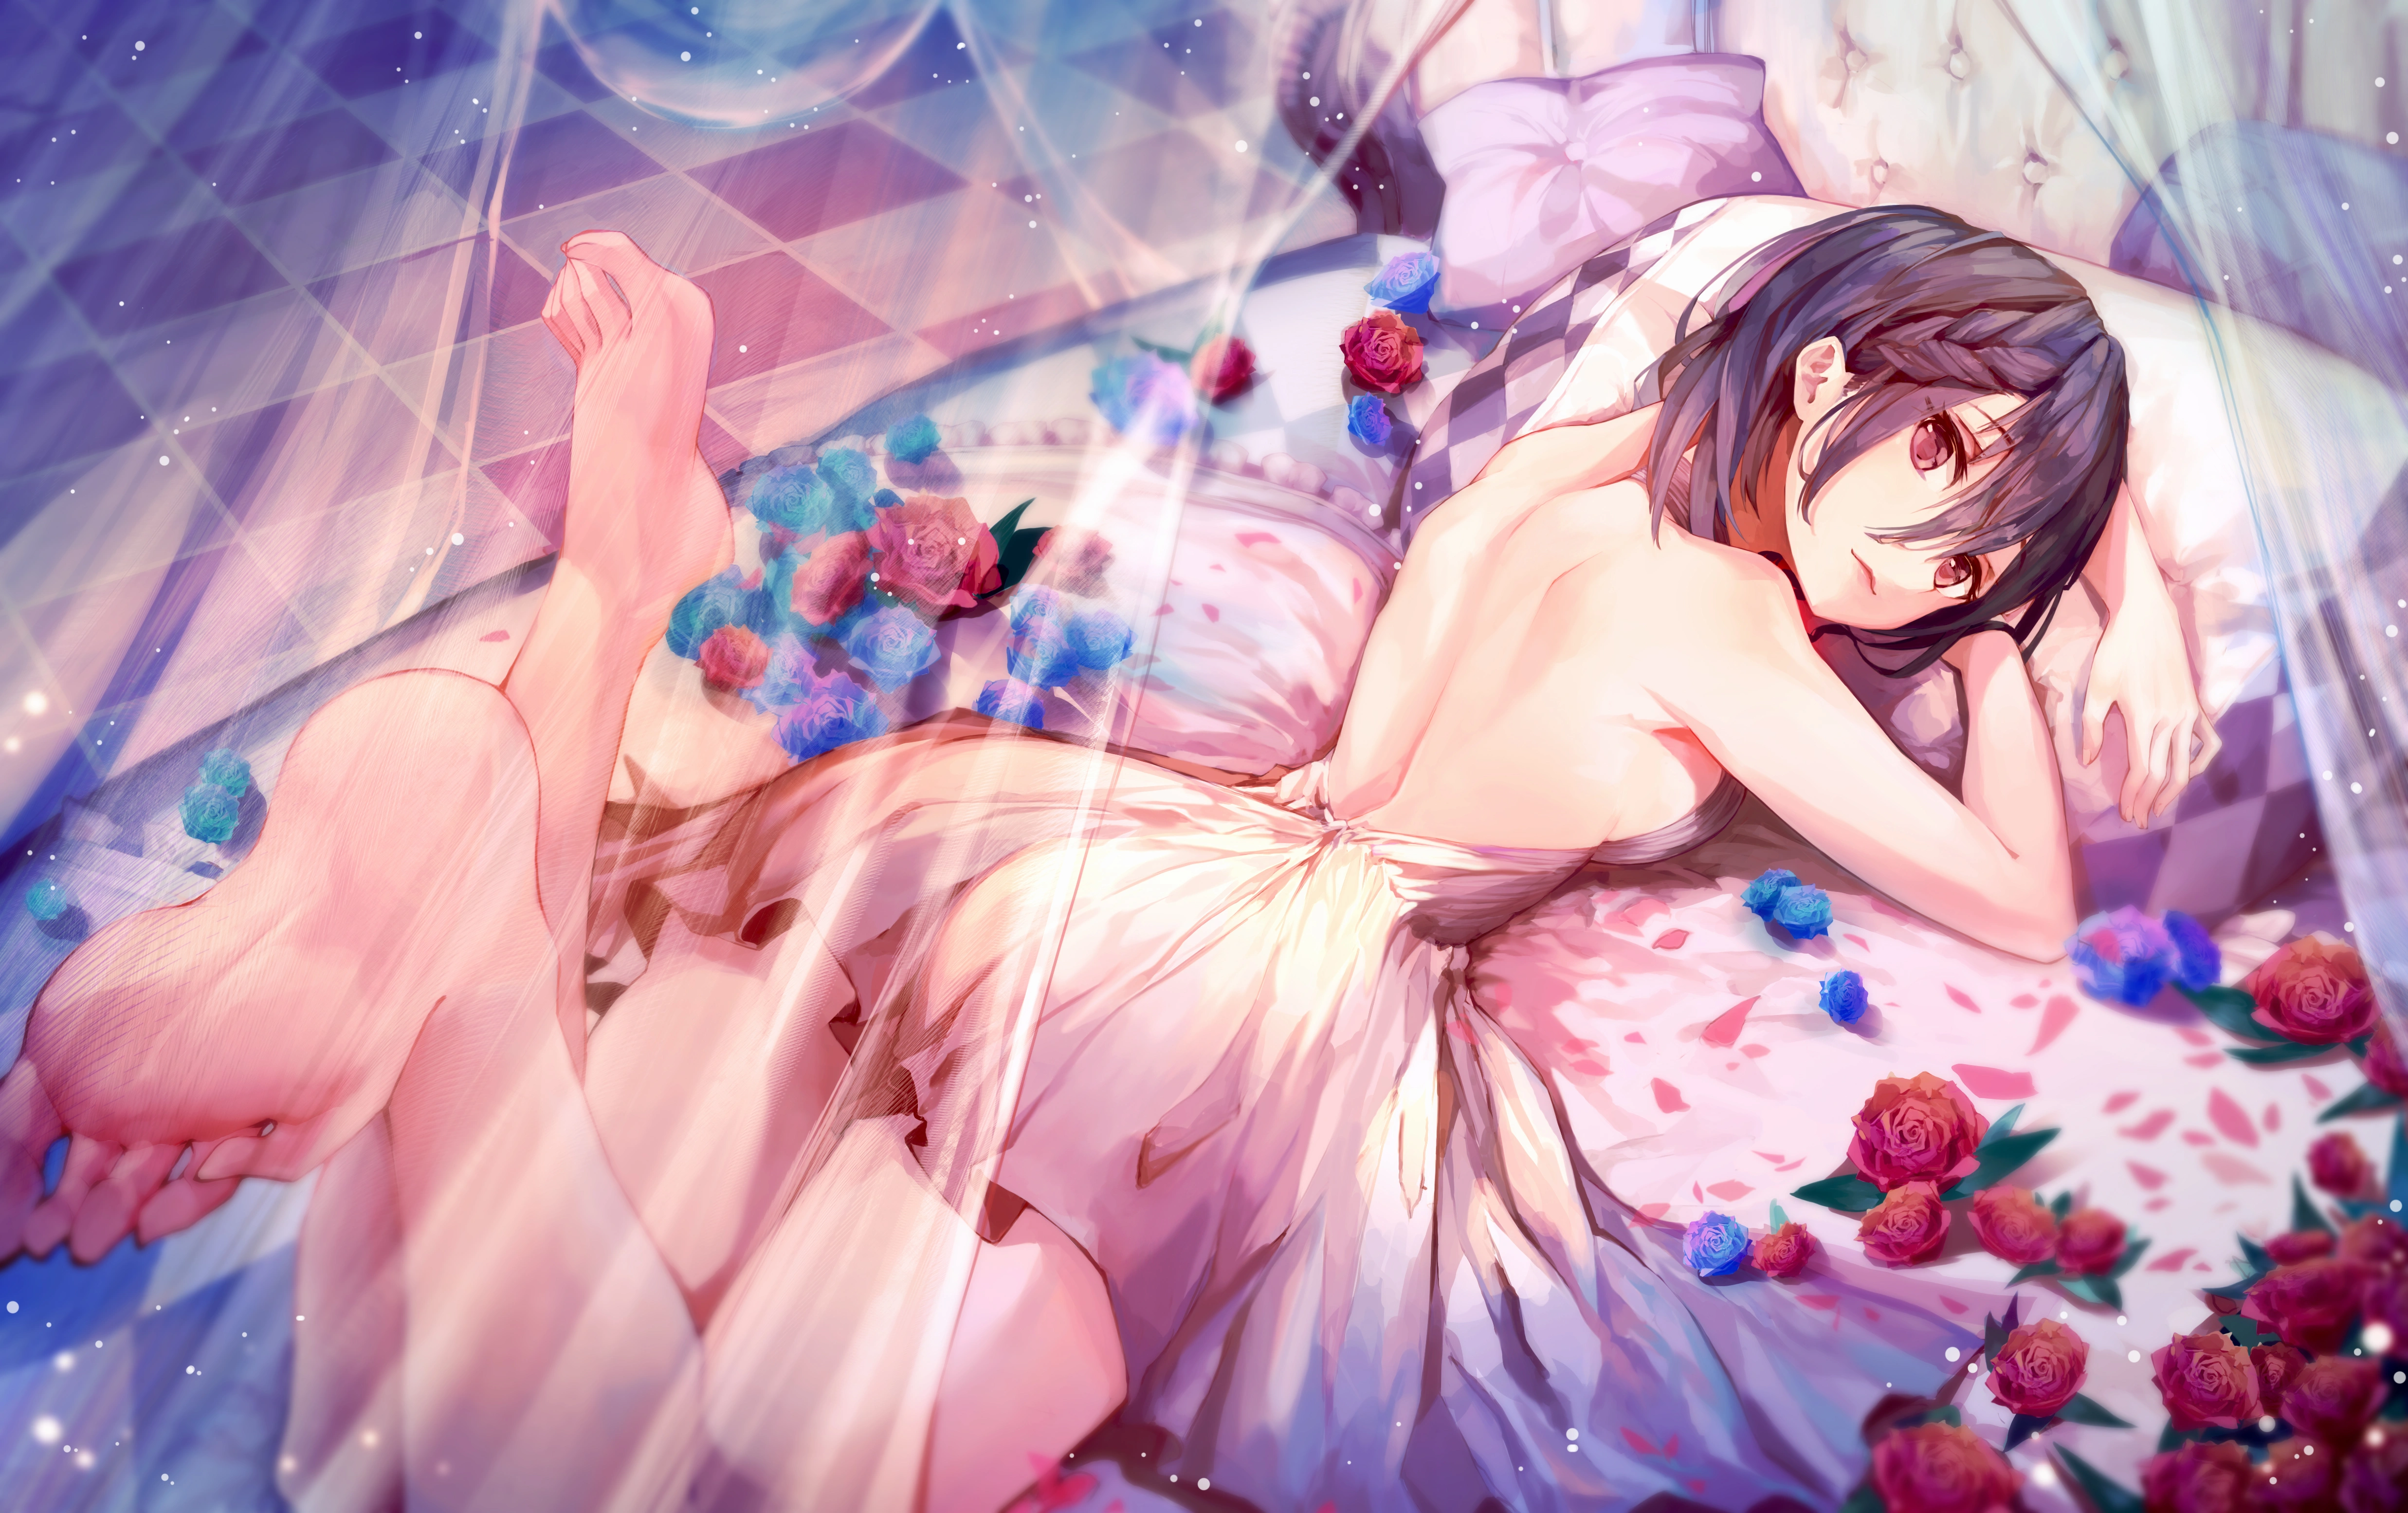 anime girl bed lying down 4k 1696778082